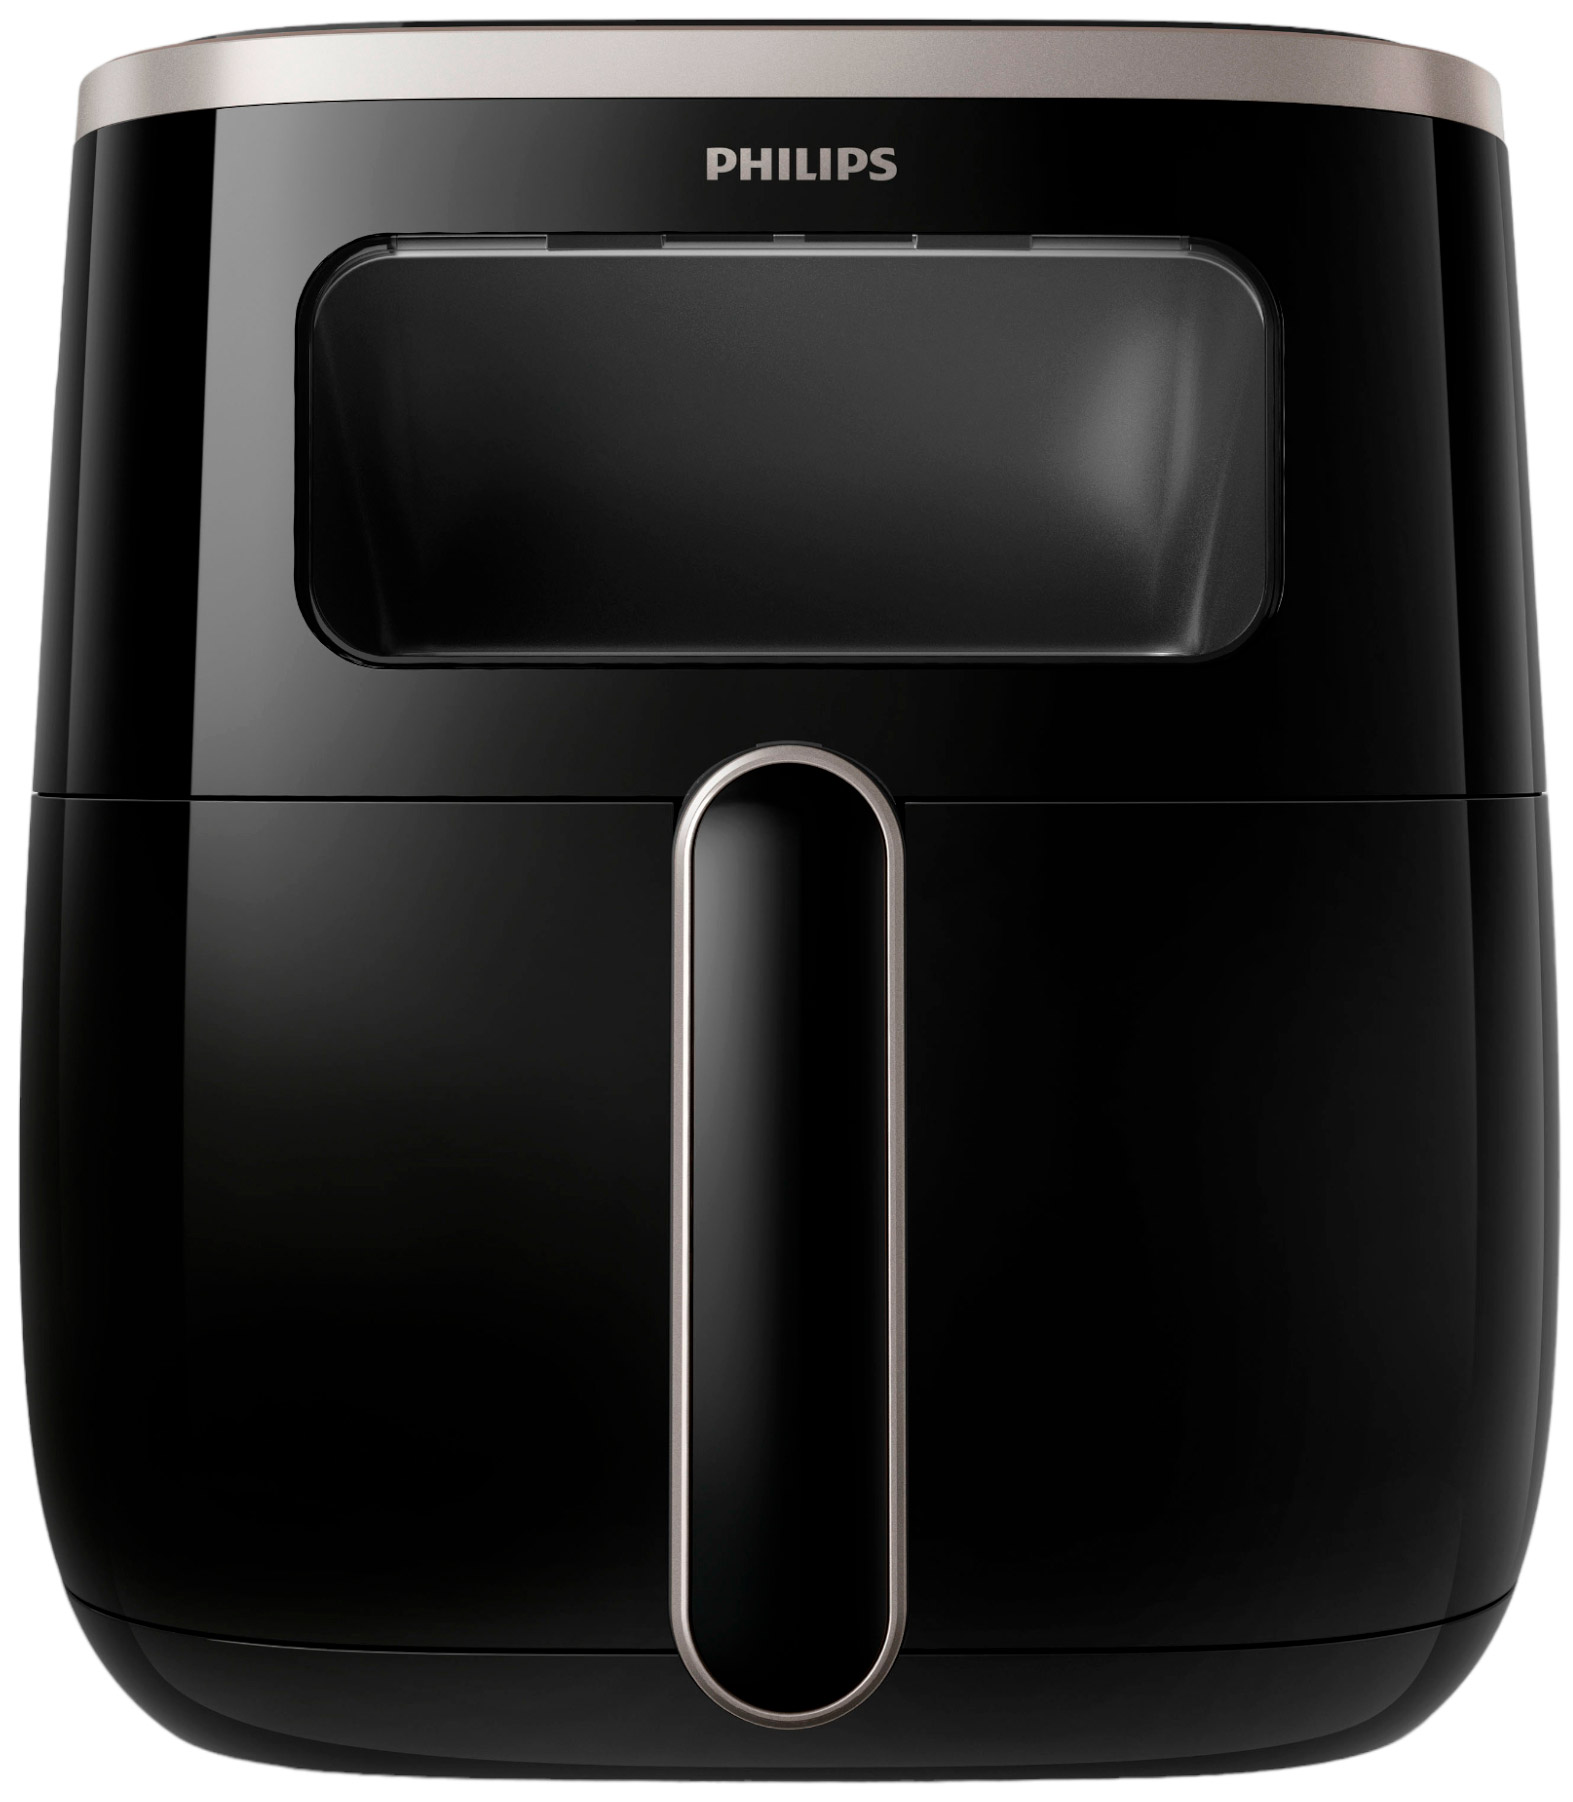 Відгуки мультипіч Philips Airfryer 3000 Series XL (HD9257/80)